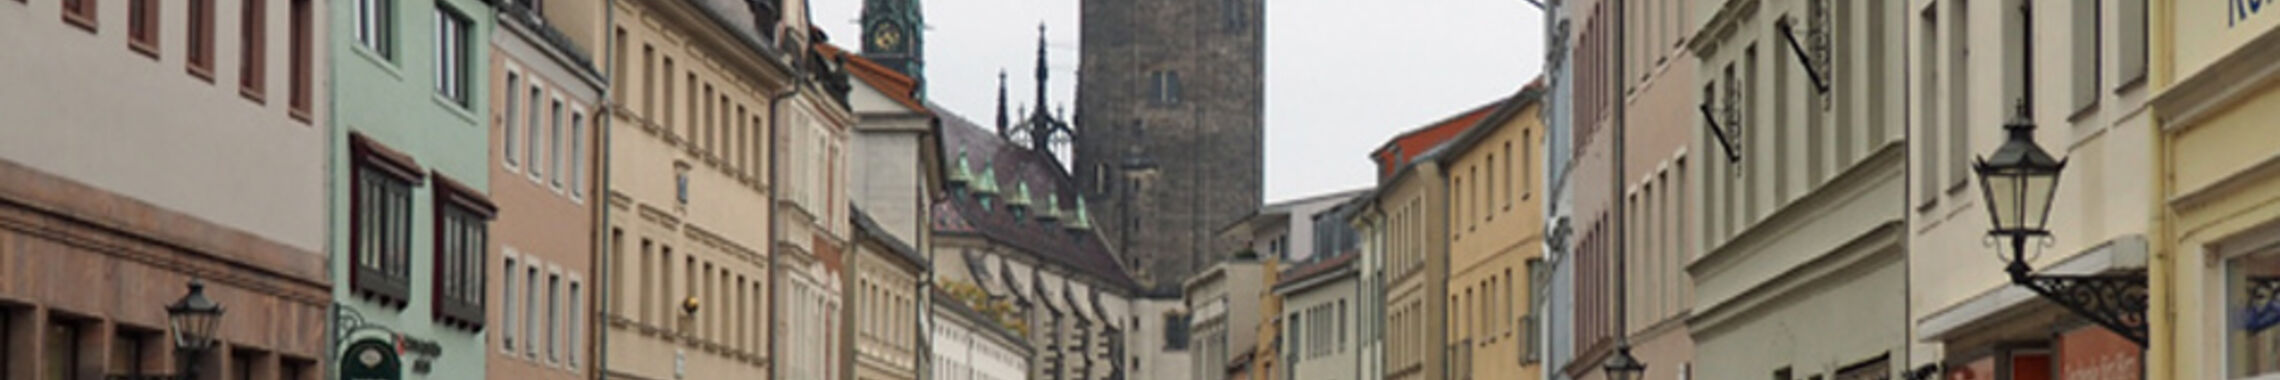 Kopf Wittenberg